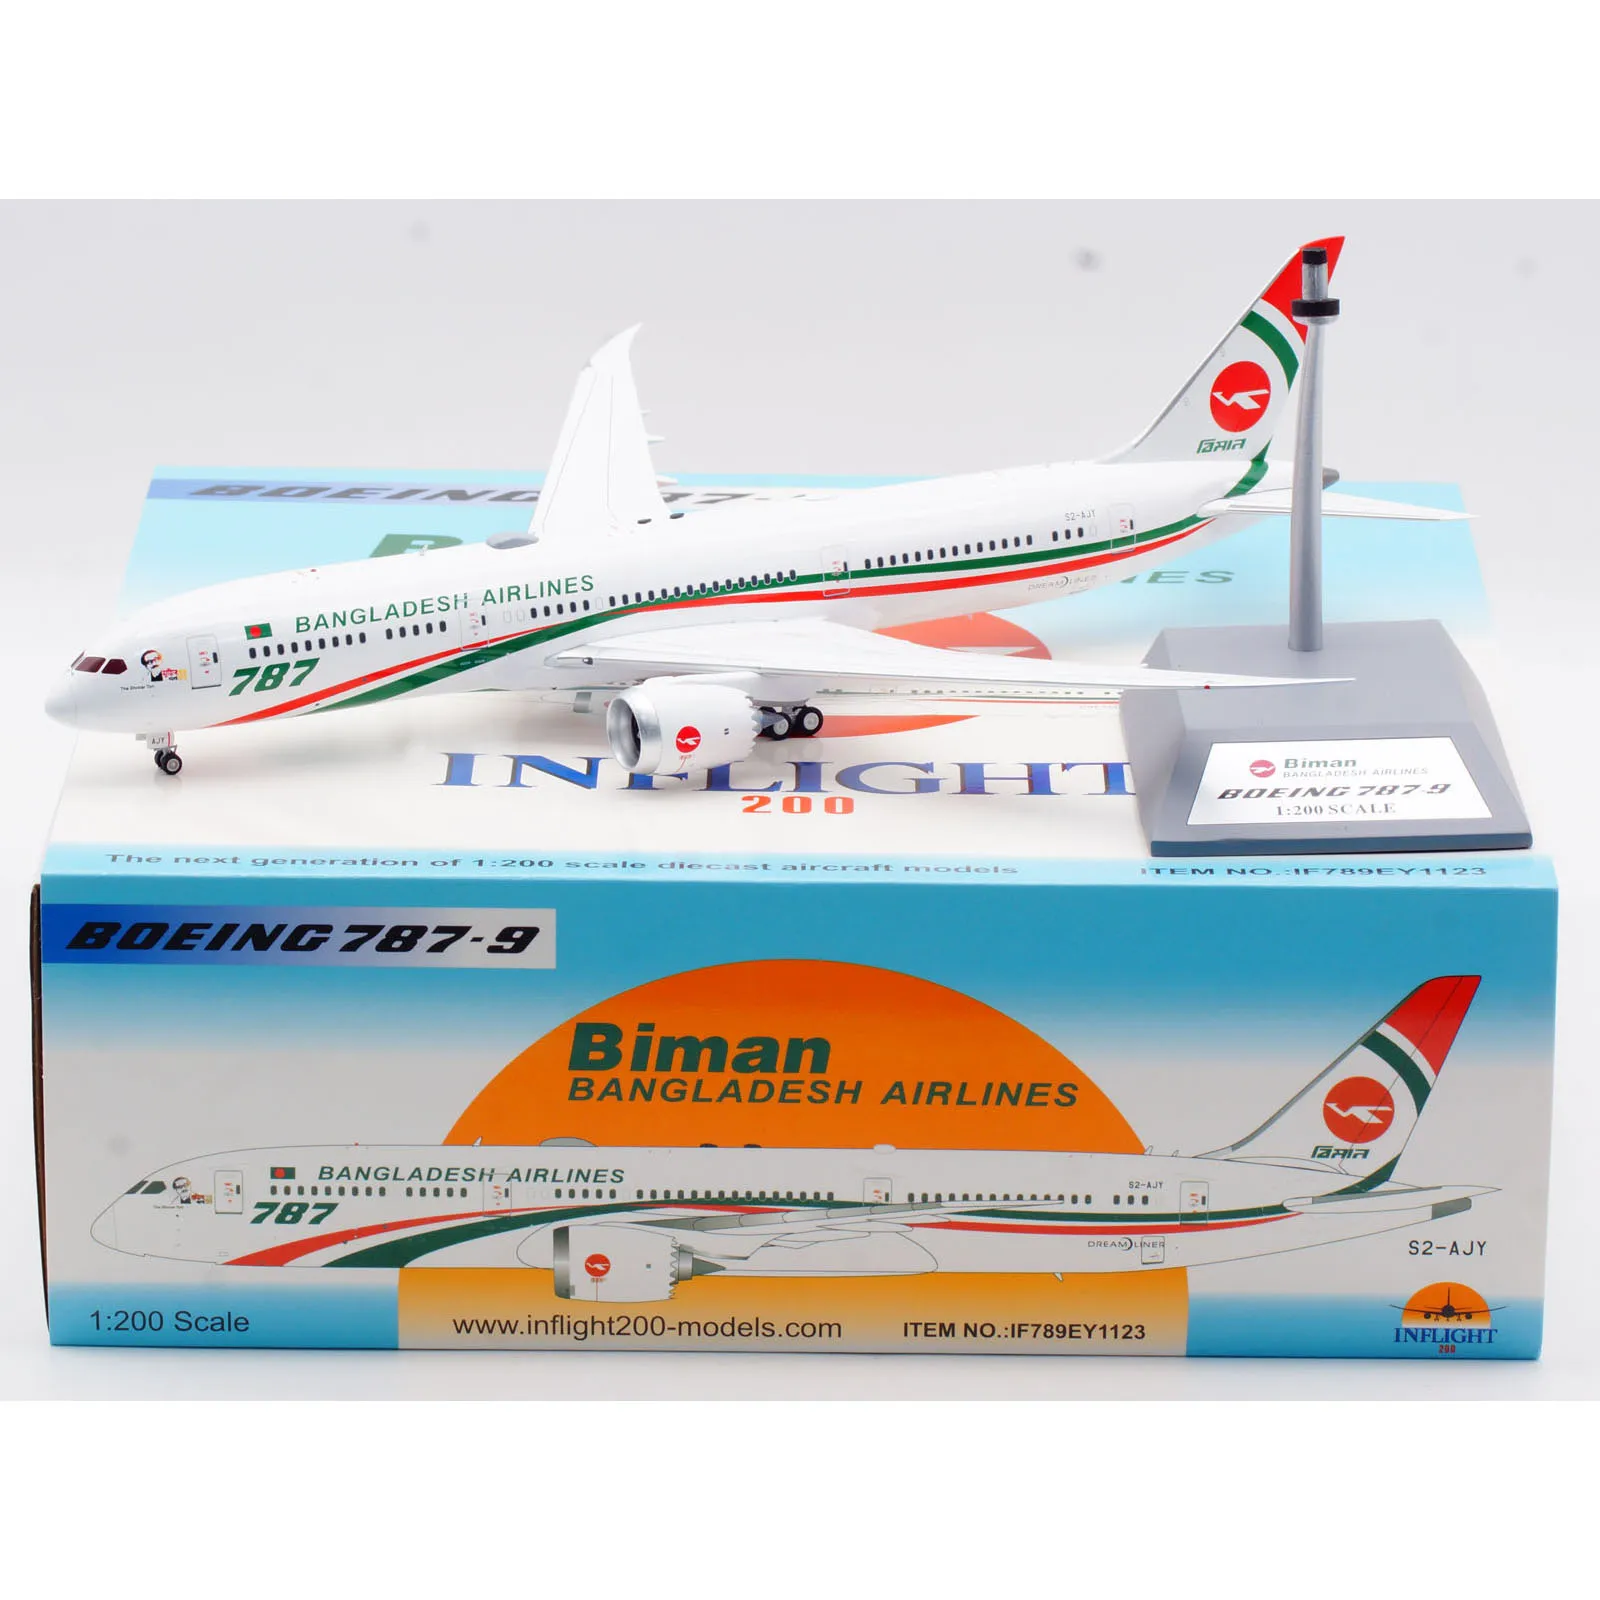 Коллекционный самолёт IF789EY1123 из сплава, подарок, летательный аппарат, модель летательного аппарата бимана 1:200, модель летательного аппарата Бангладеш эйрлайнз